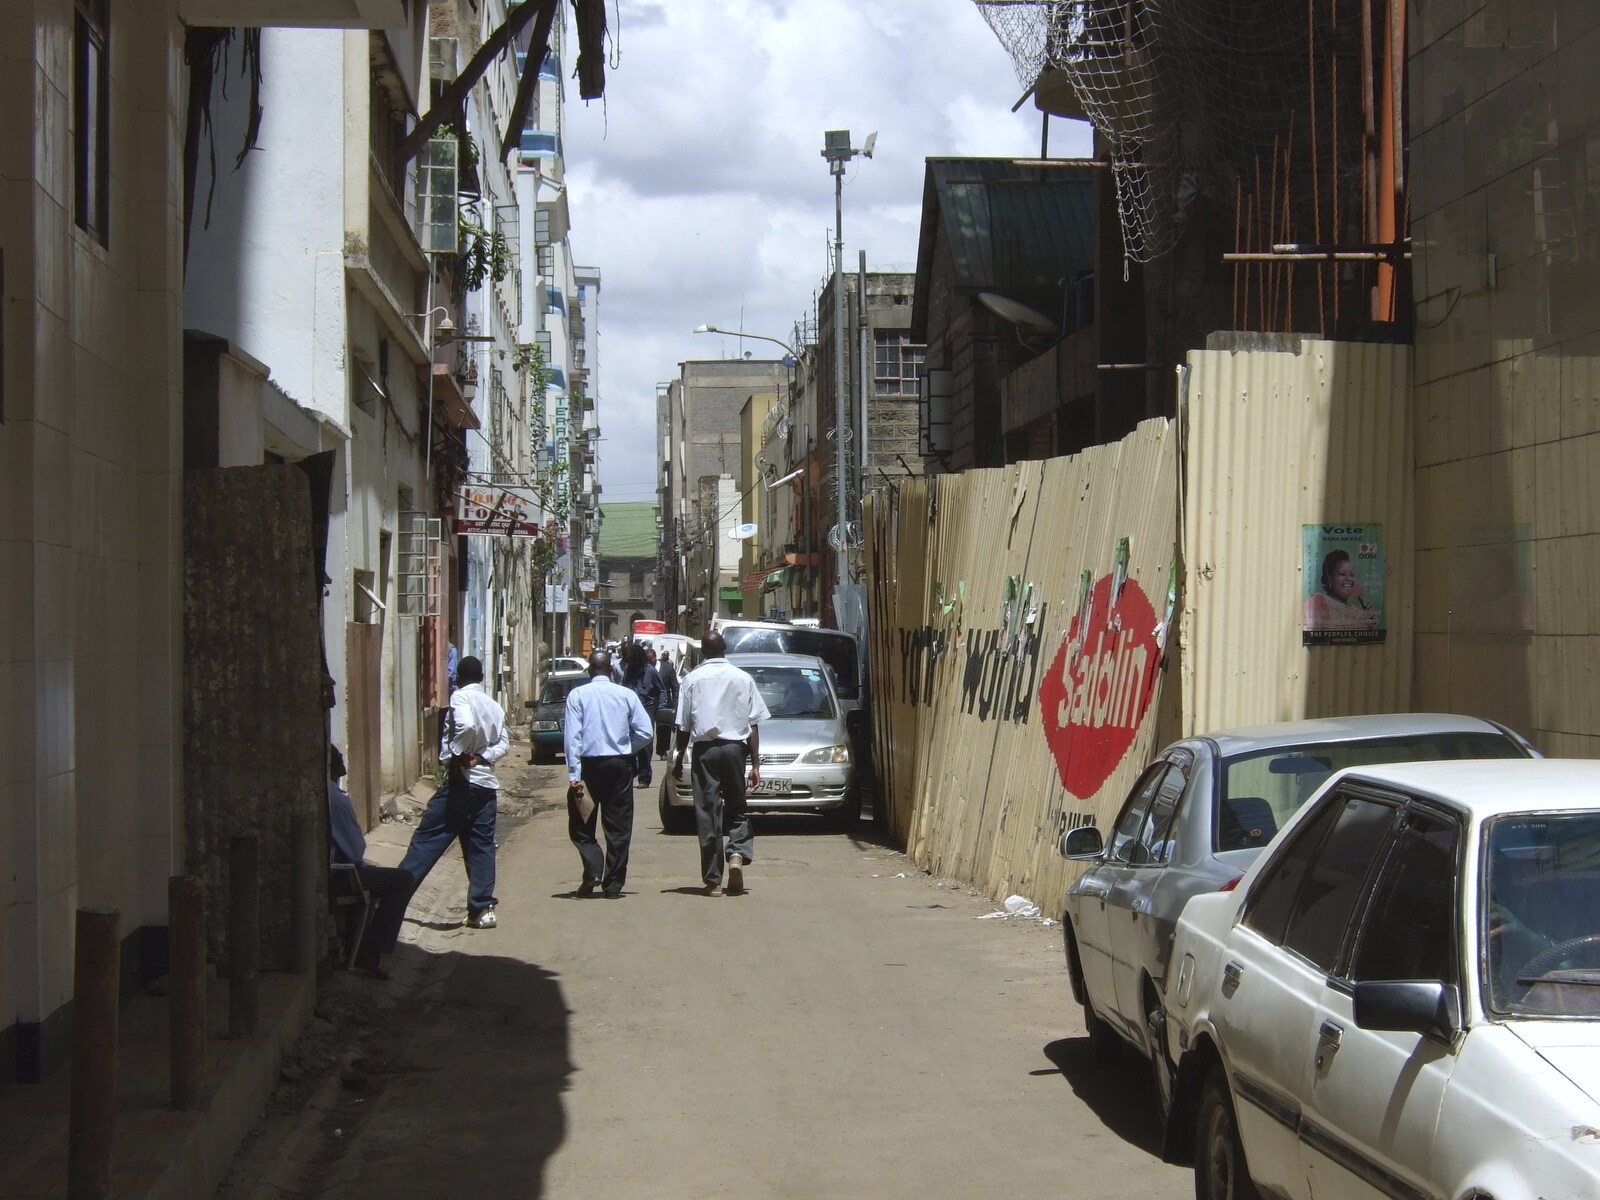 A back alley behind the market from Nairobi and the Road to Maasai Mara, Kenya, Africa - 1st November 2010